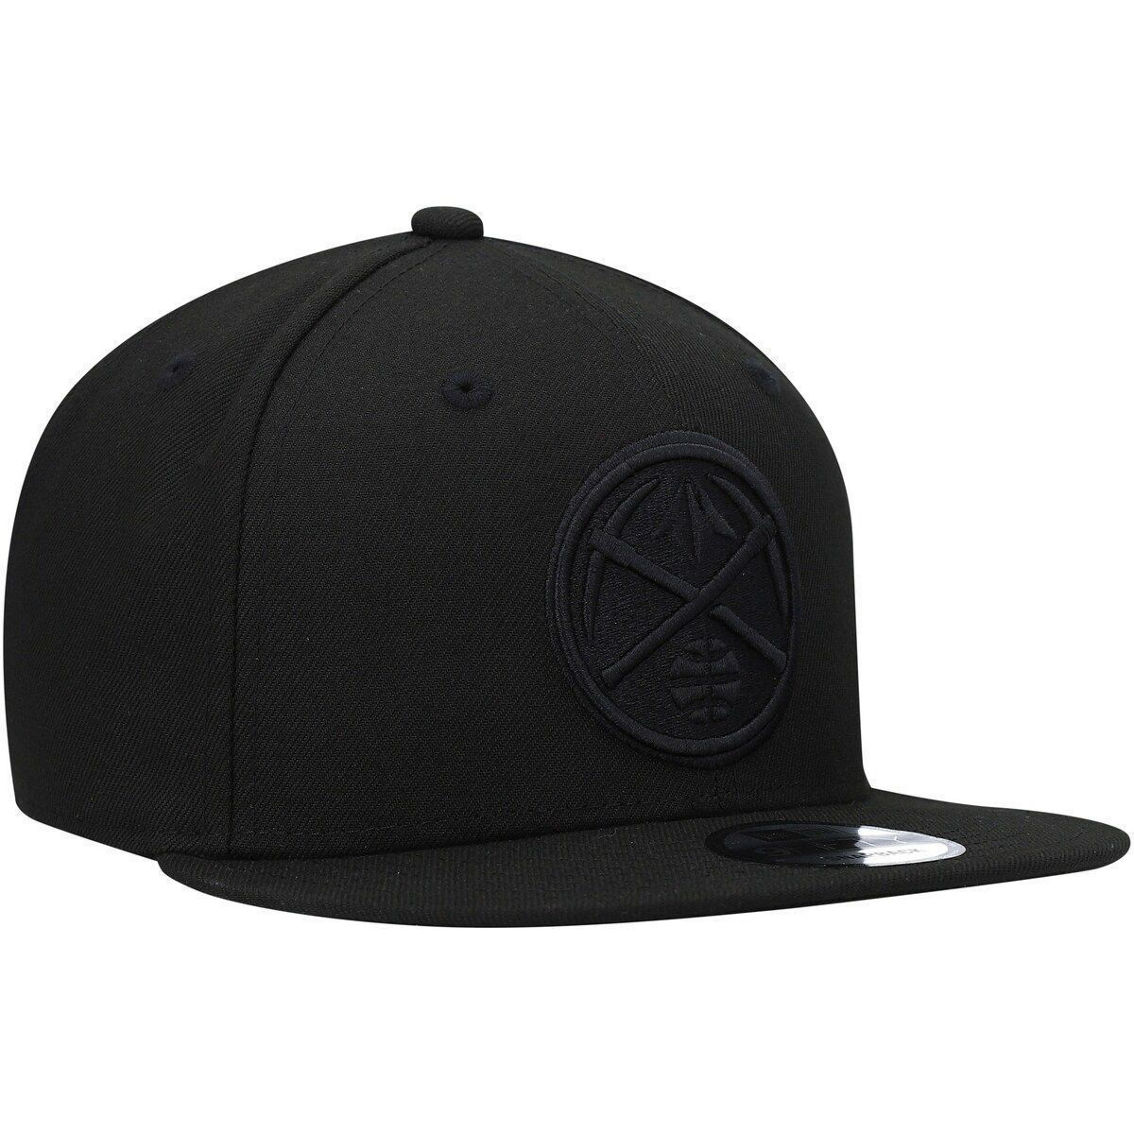 New Era Men's Denver Nuggets Black On Black 9FIFTY Snapback Hat - Image 4 of 4